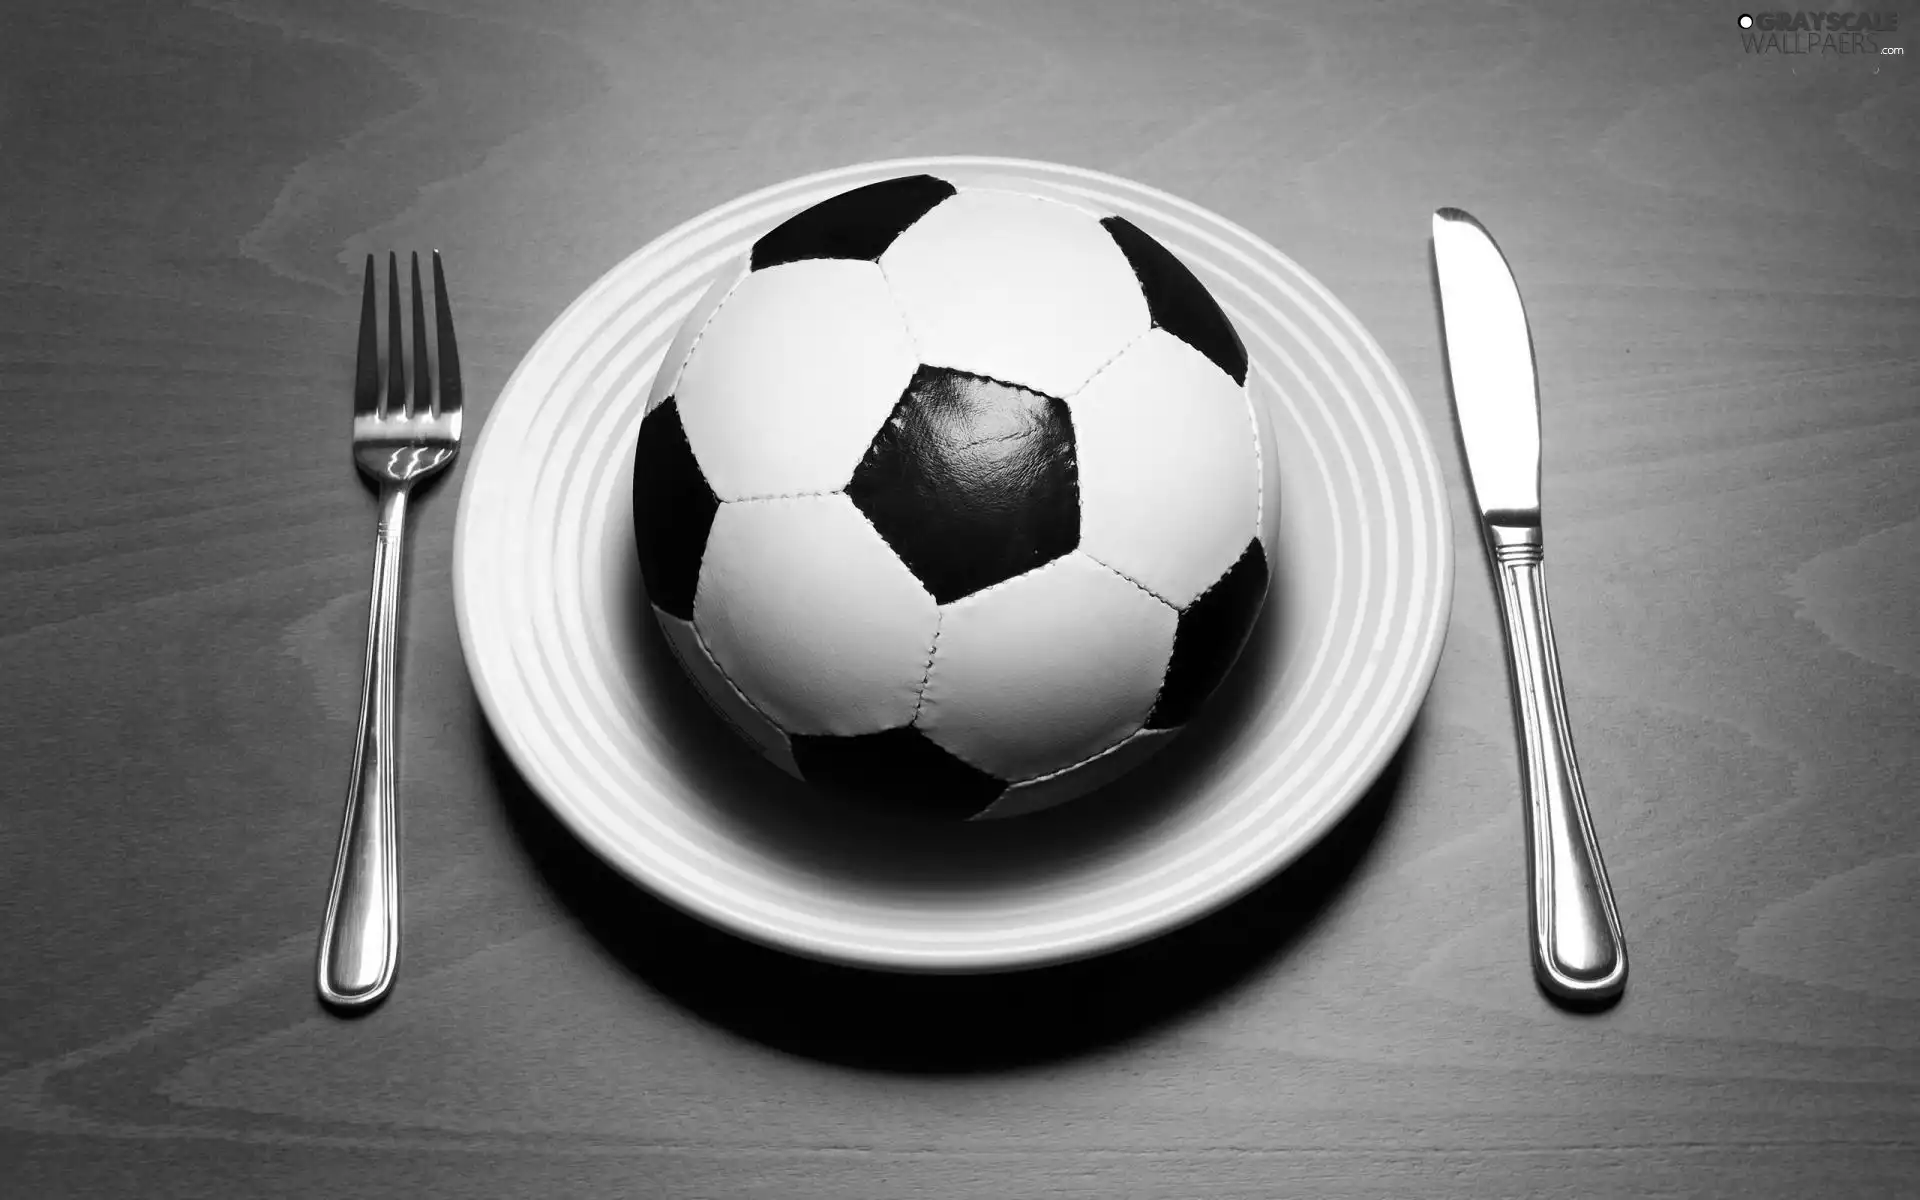 dinner, Balls, football, Fan